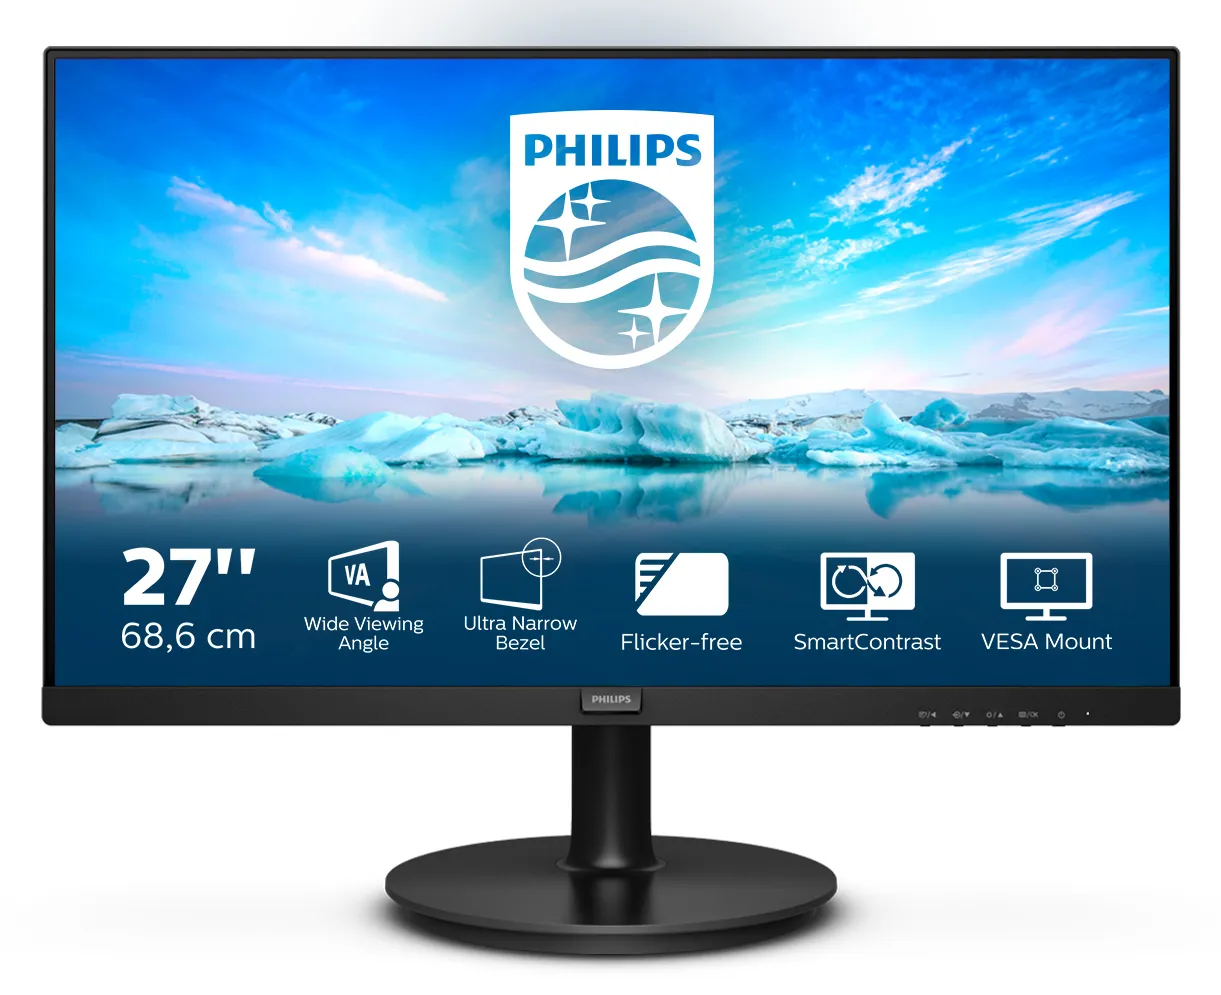 Vente PHILIPS 271V8L/00 27p VA LCD FHD 1920x1080 16:9 Philips au meilleur prix - visuel 8